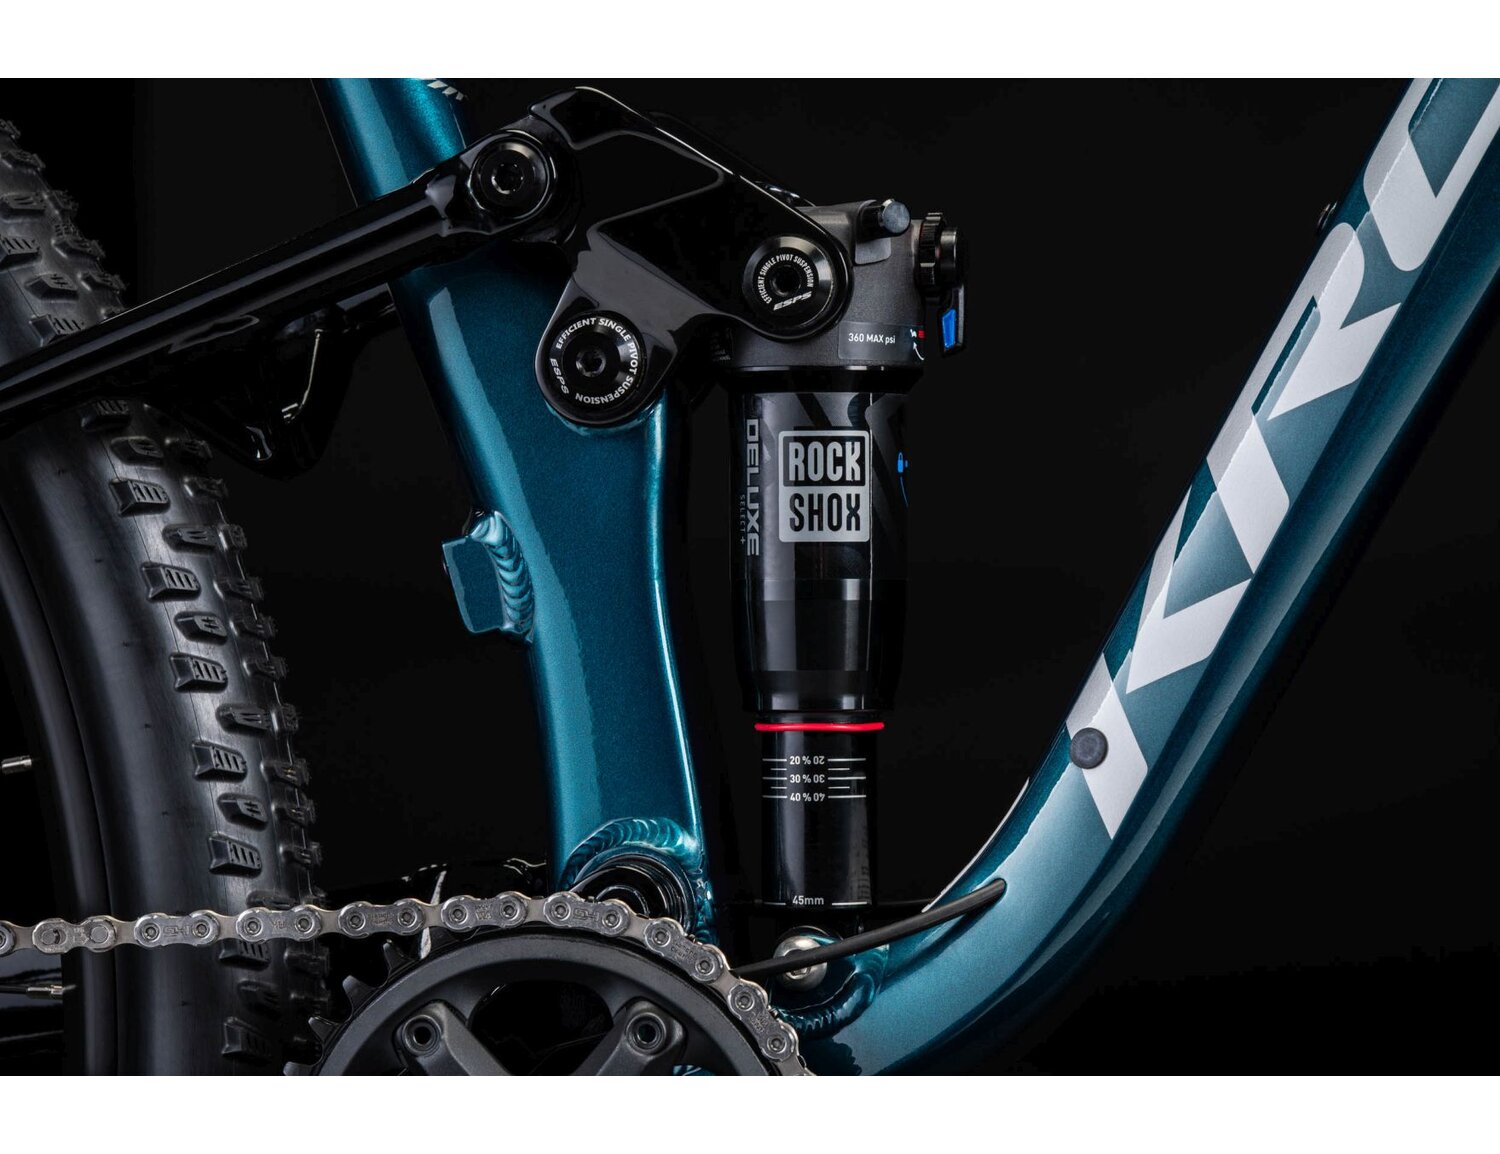  Tylny amortyzator Rock Shox Deluxe Select RL oraz mechanizm korbowy FSA Gama Pro w rowerze górskim MTB XC KROSS Earth 2.0 